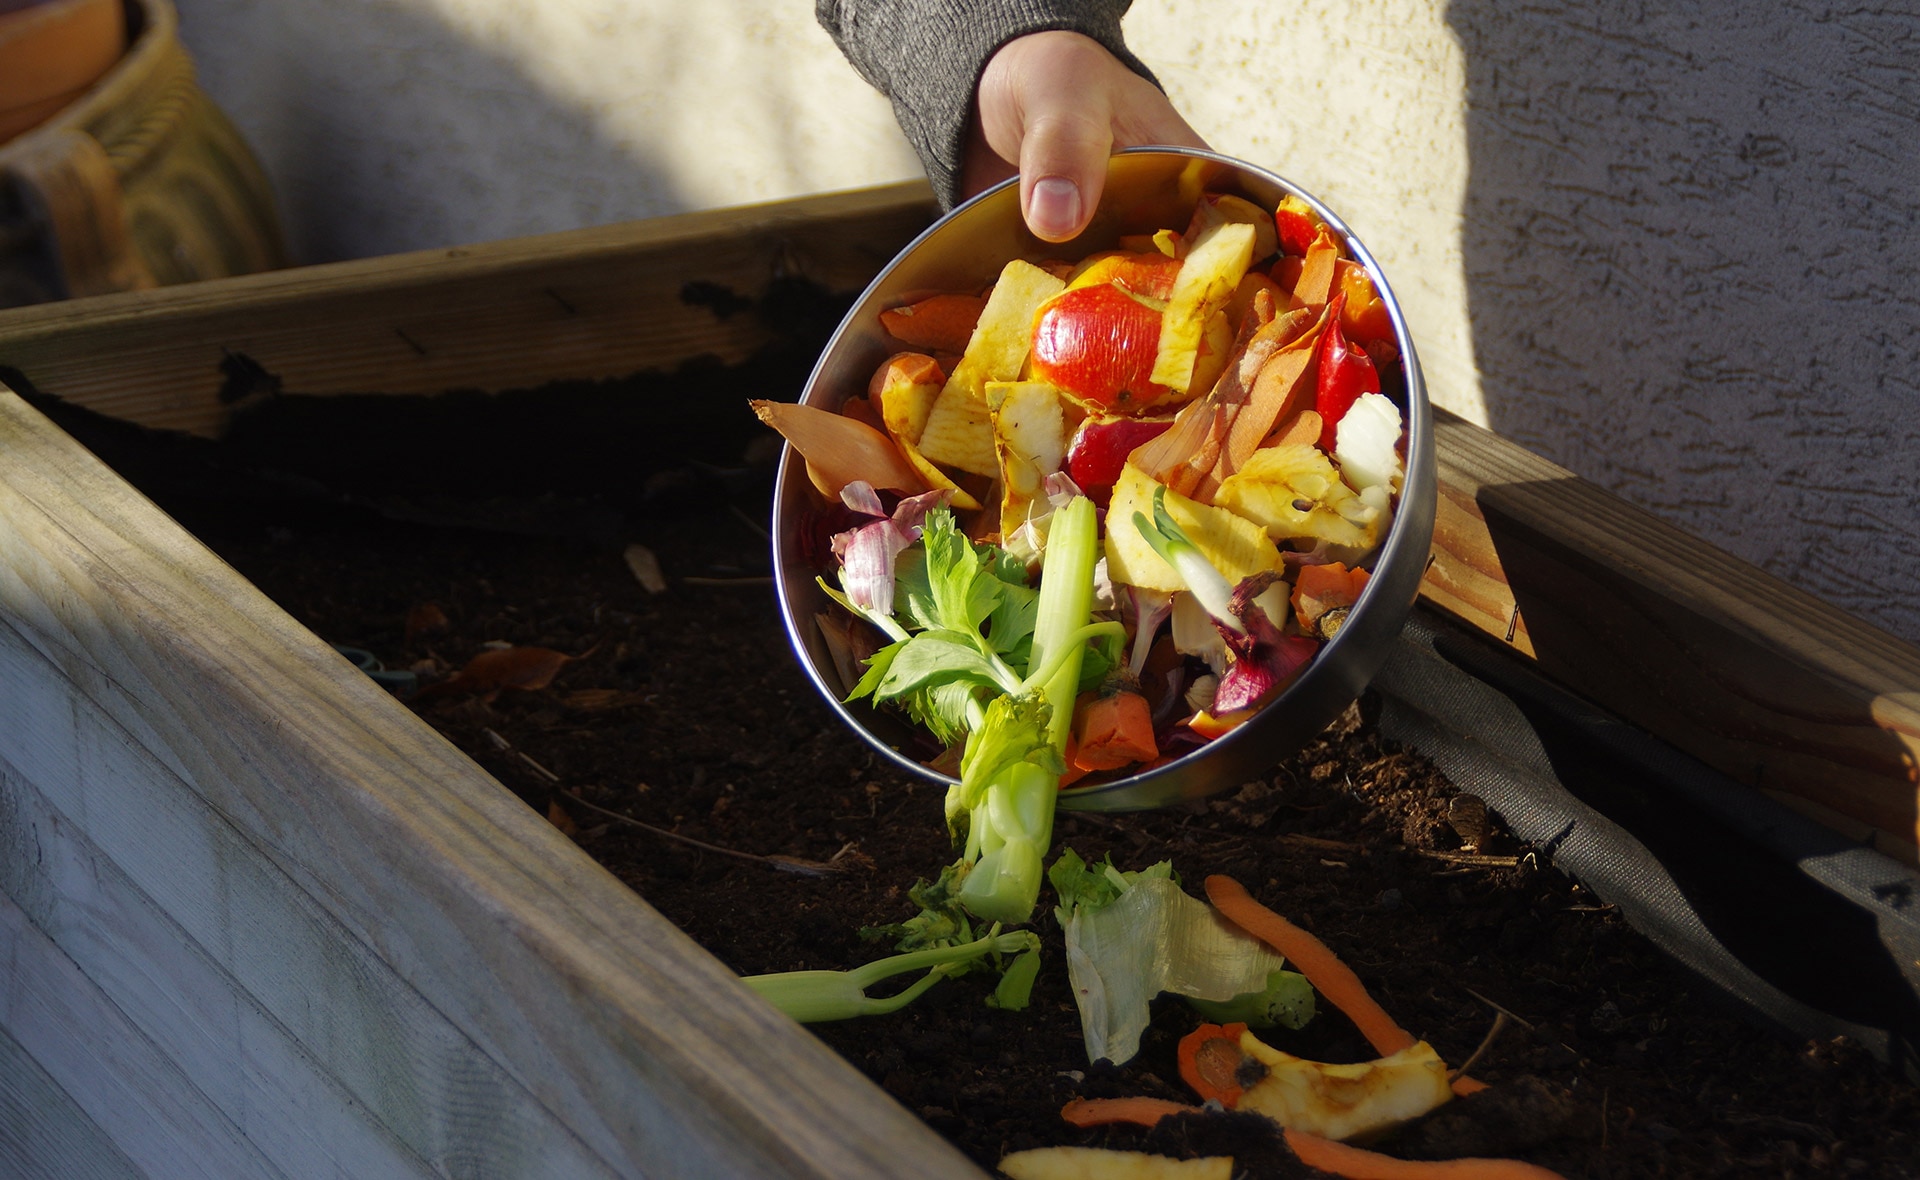 BBVA-compost-casero-alimentos-sostenibilidad-huerto-jardin-comida-saludable